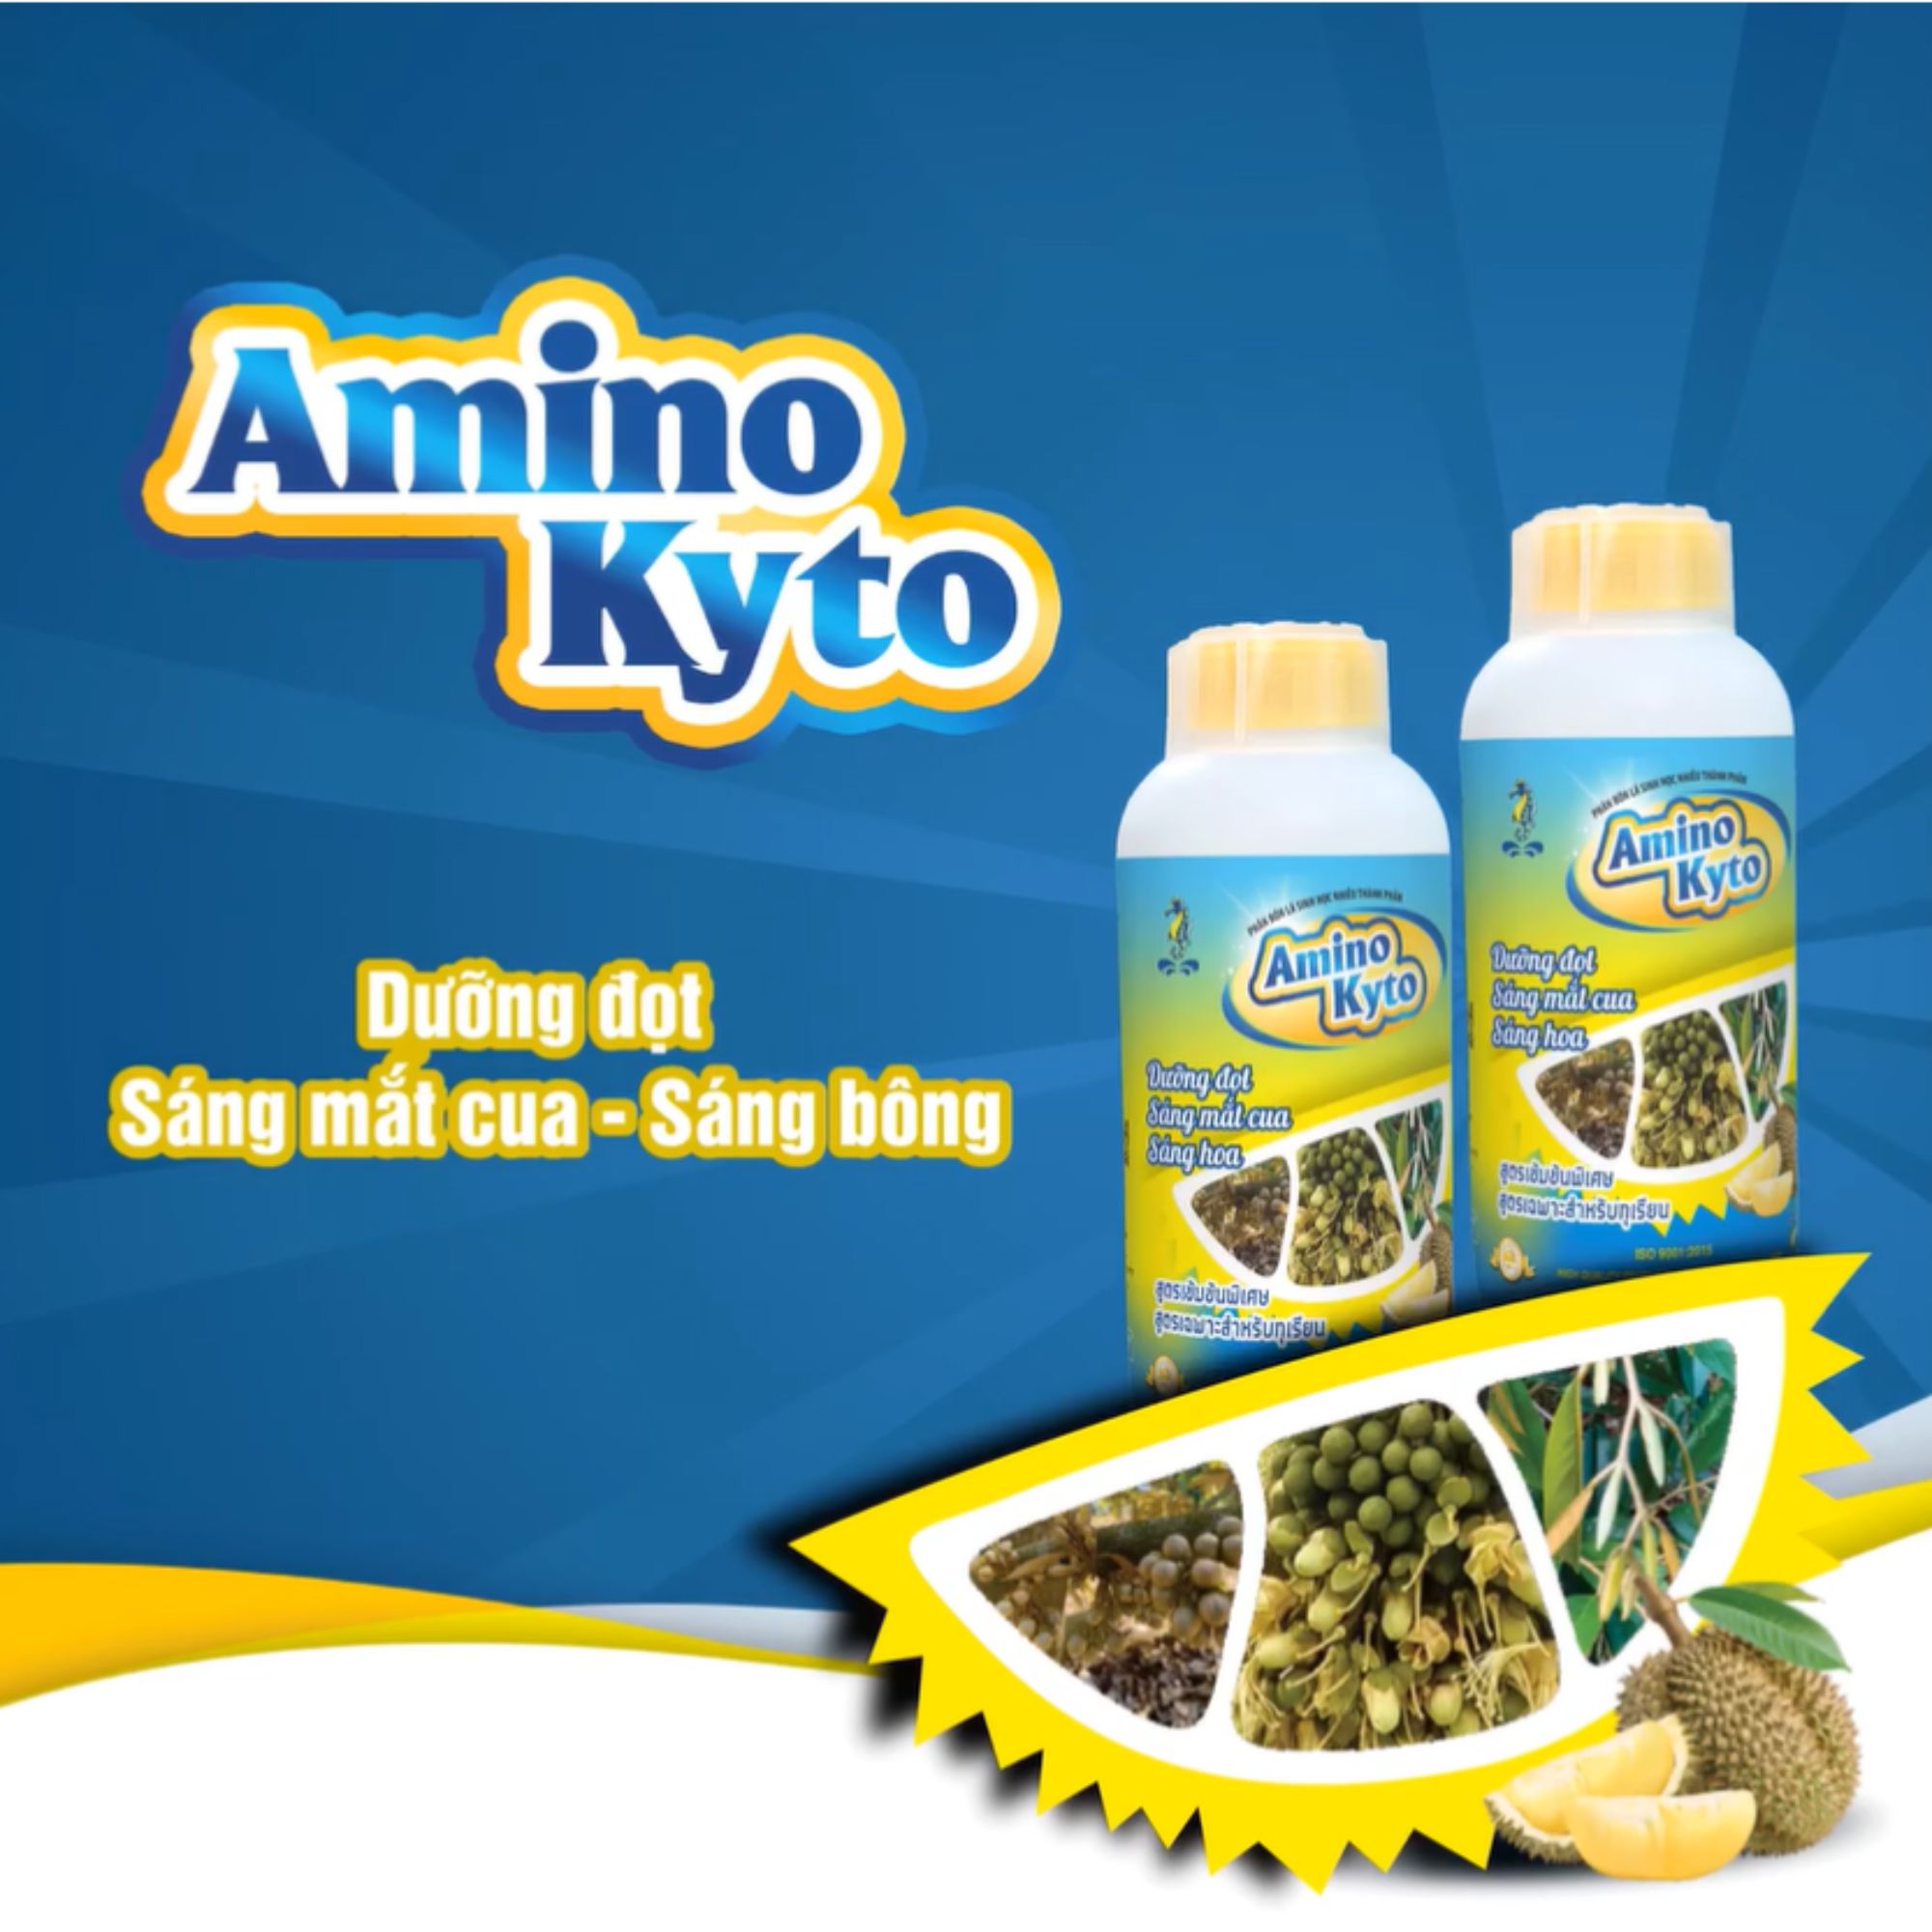 Sitto Amino Kyto chuyên sầu riêng (Chai 500ml): Dưỡng đọt - sáng mắt cua - sáng hoa